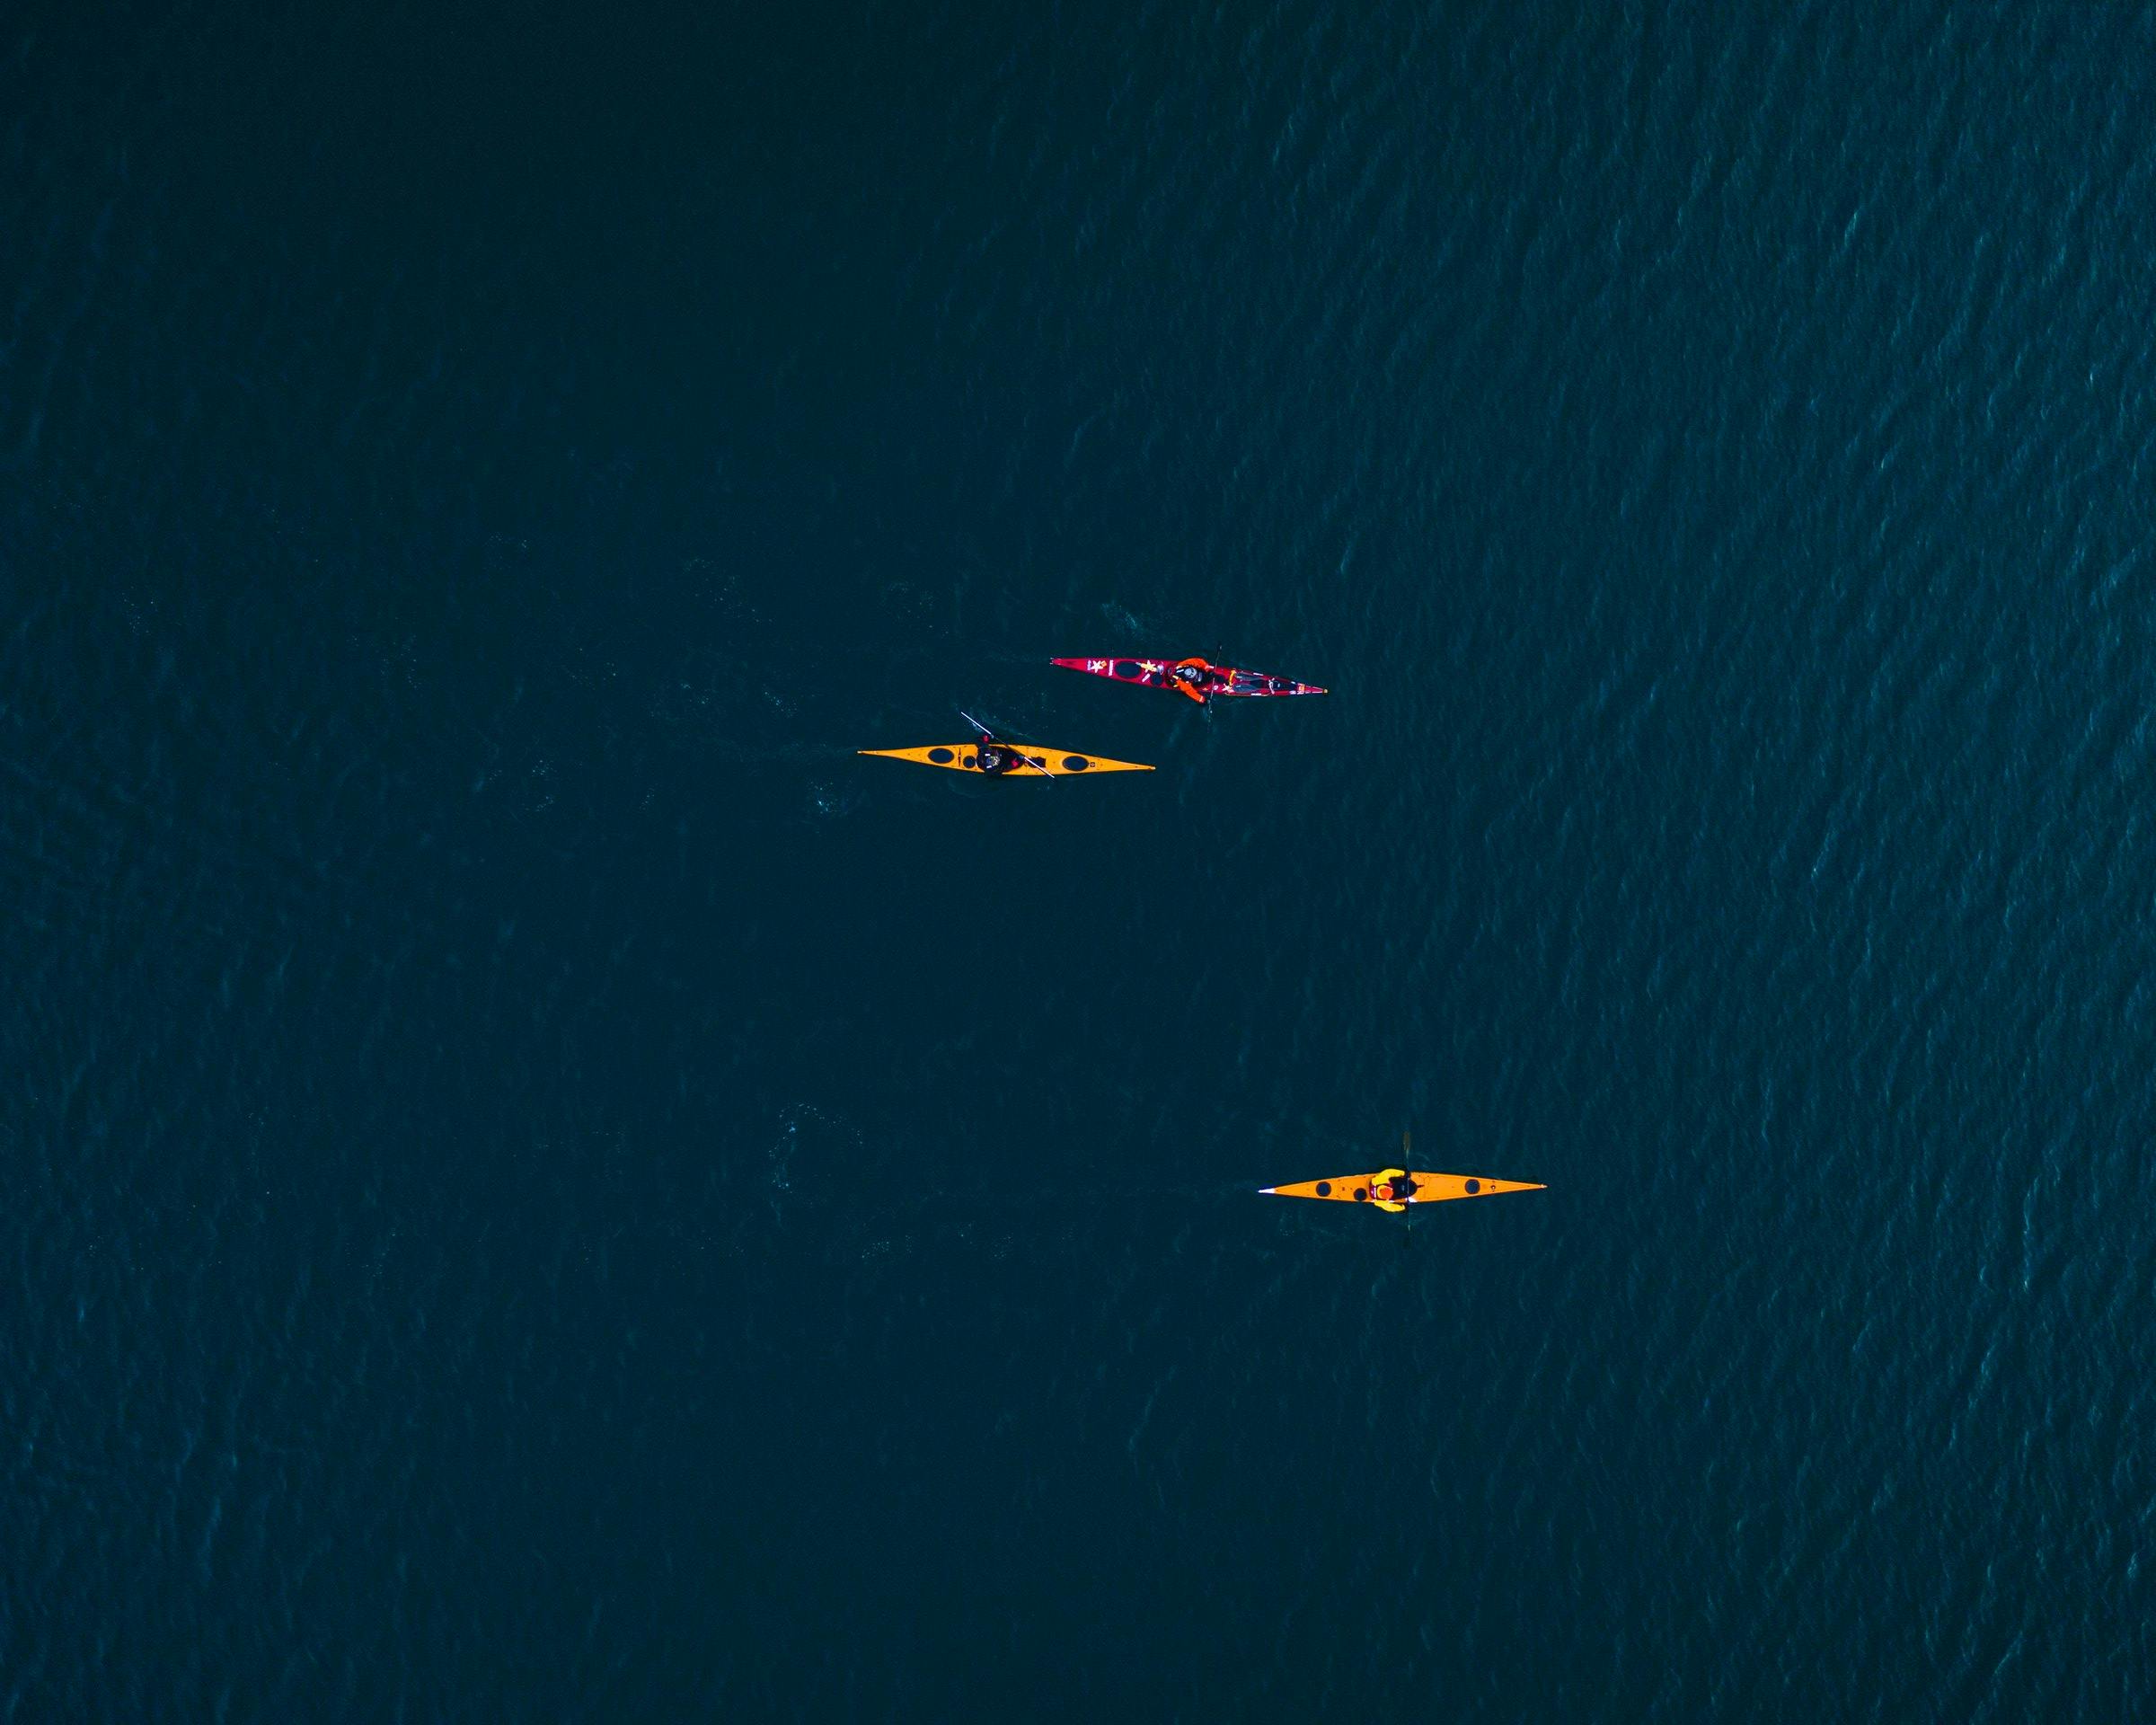 three kayaks on the ocean